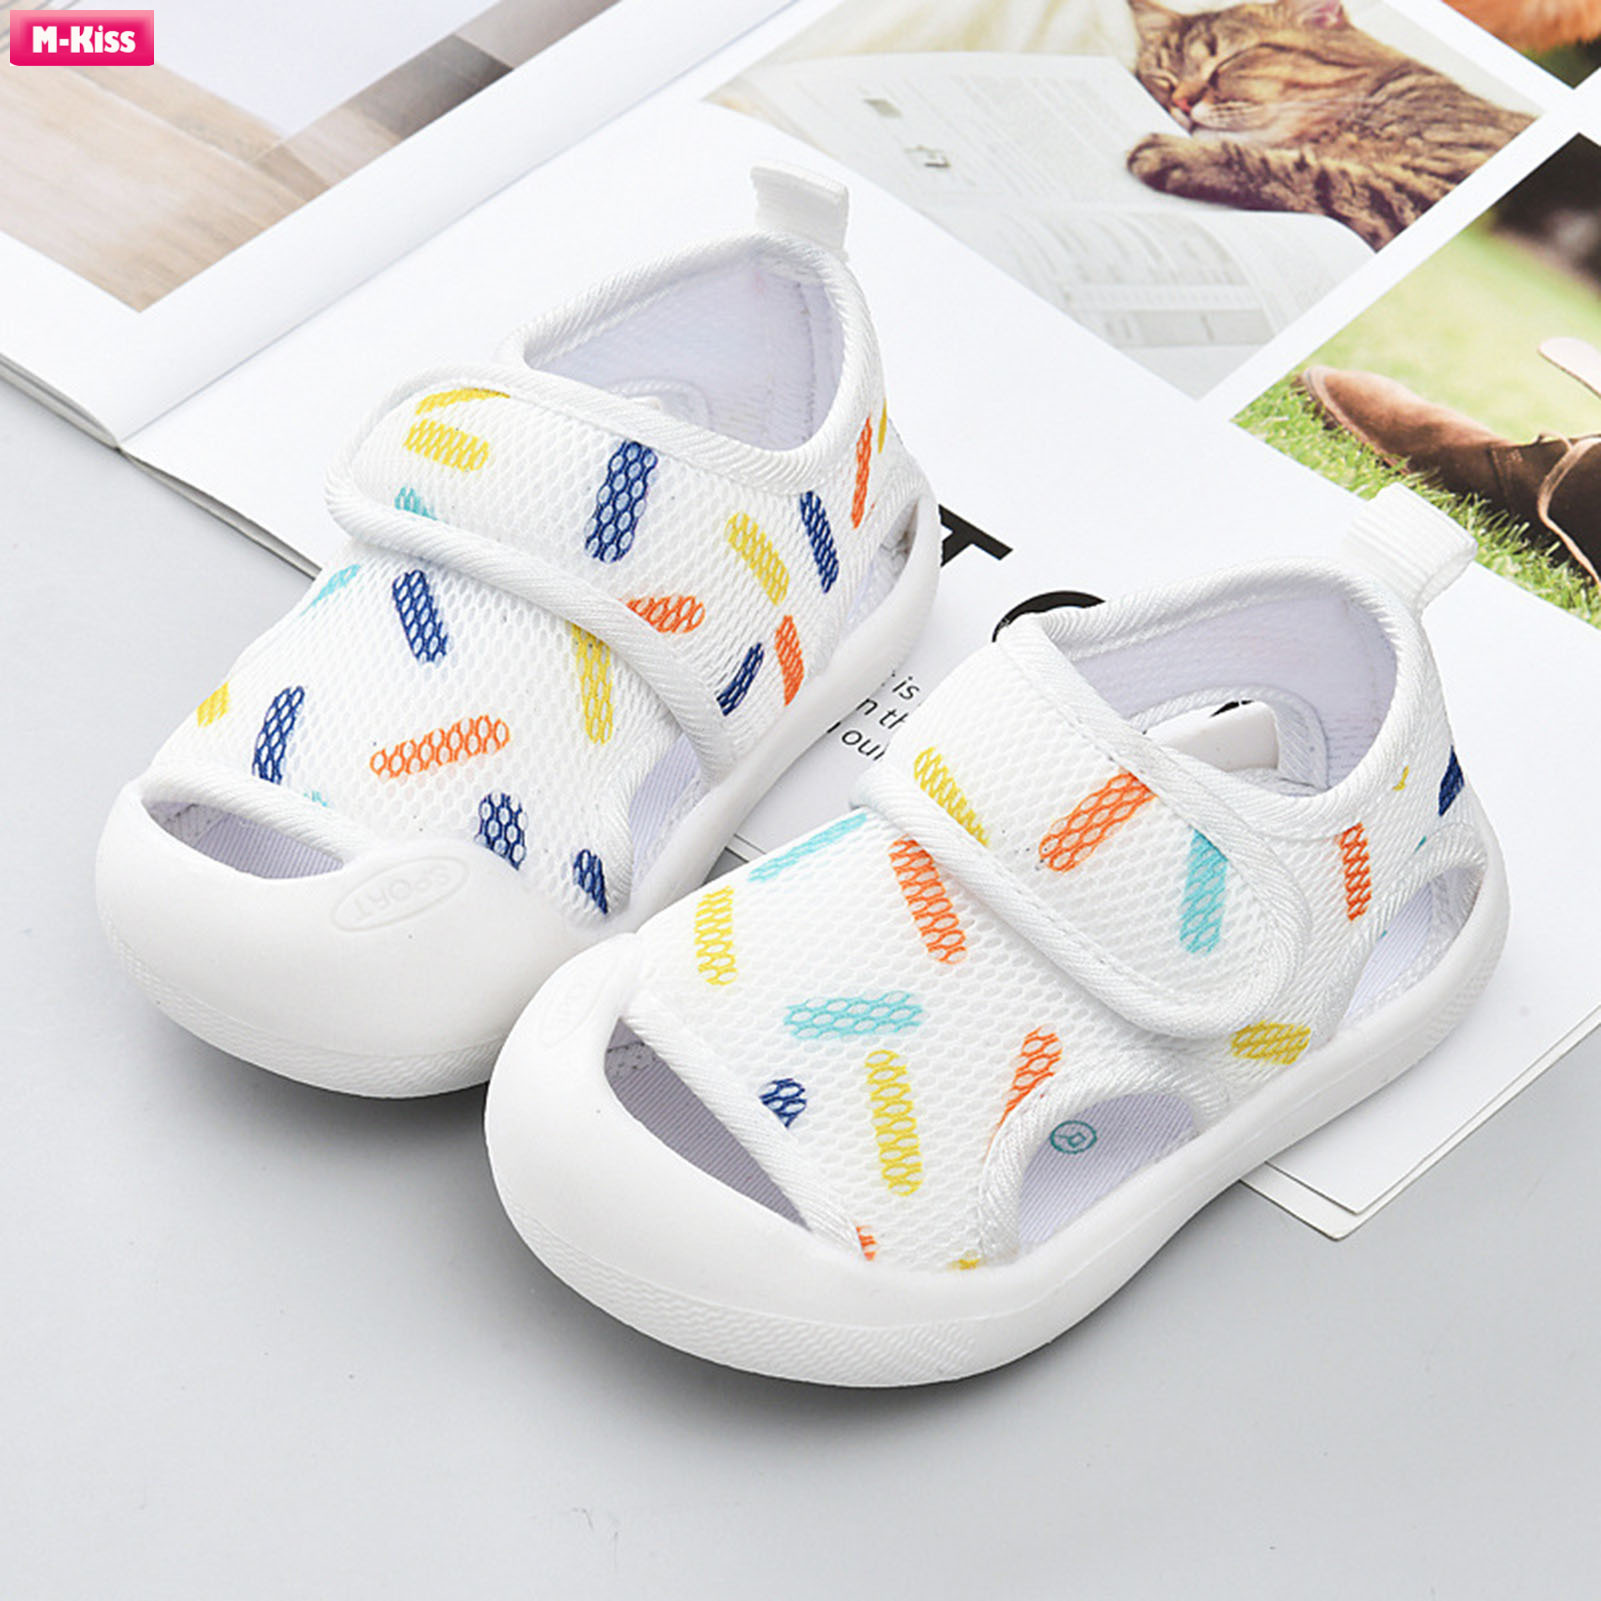 M-Kiss Infant Girls Boys Comfort Sandals Handmade Skin